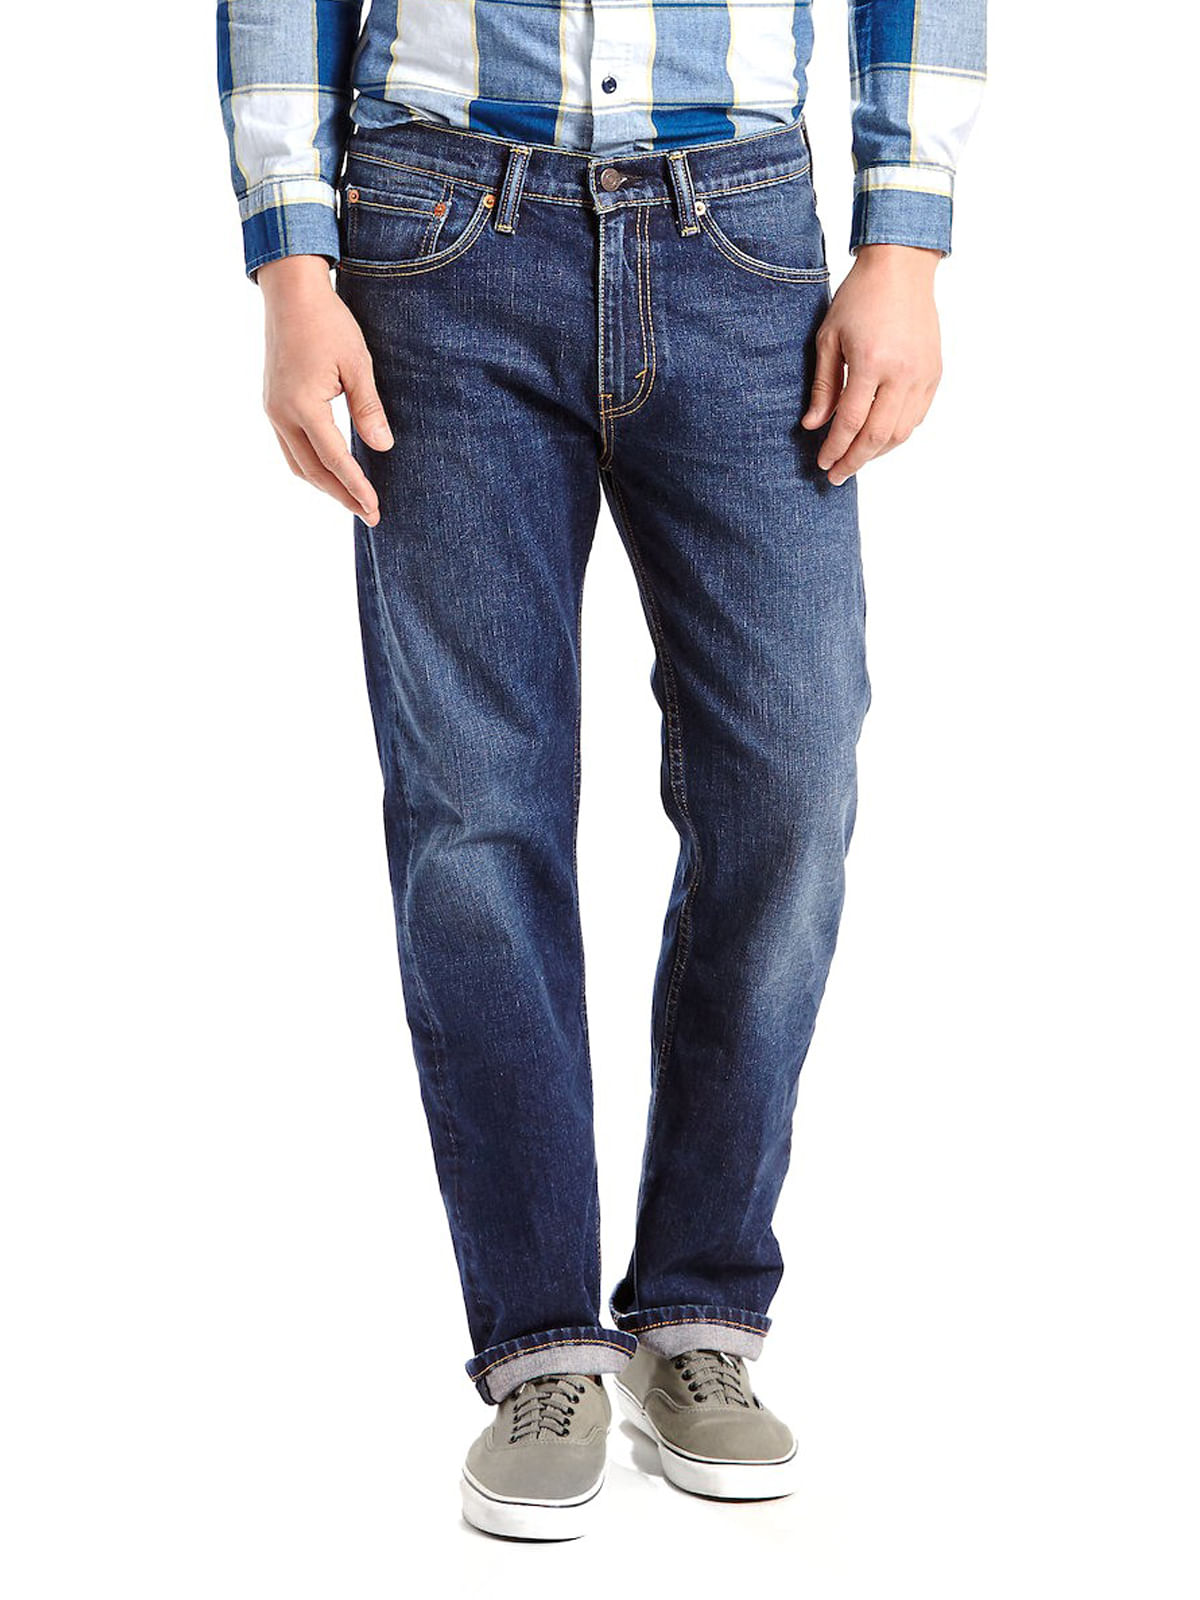 Jeans y Pantalones,00505-4891 - Tienda Oficial de Levi's Online en